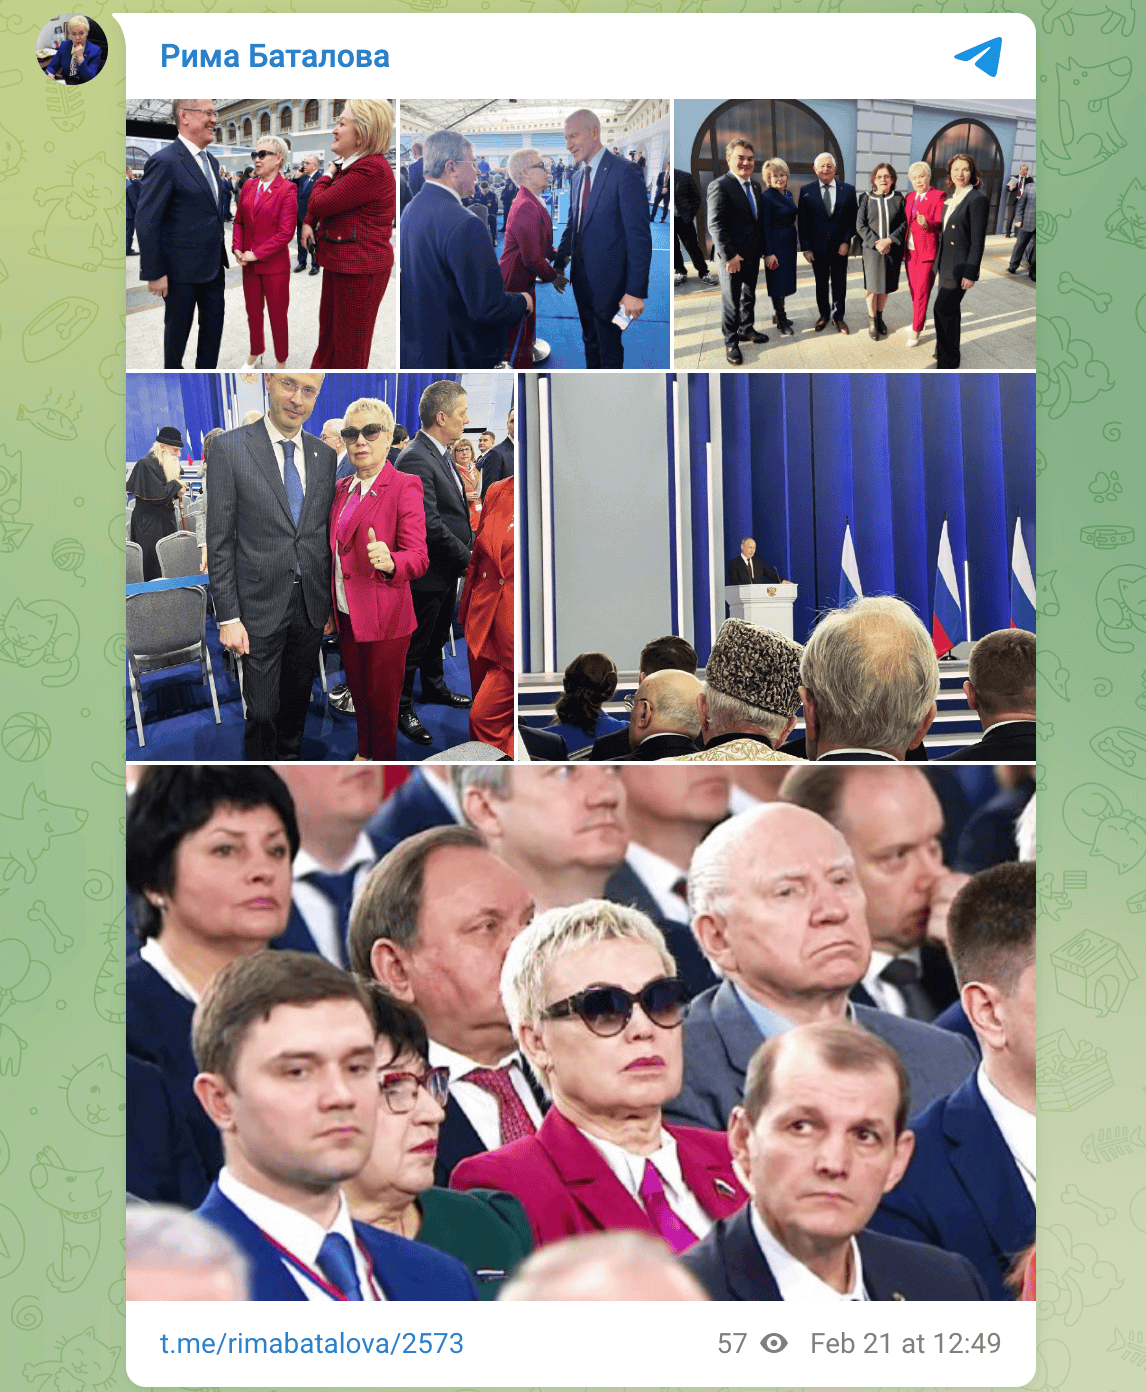 „Heute hielt der russische Präsident Wladimir Putin seine nächste Rede vor der Bundesversammlung“, schreibt der Telegram-Kanal Rima Batalova diese Bilder.